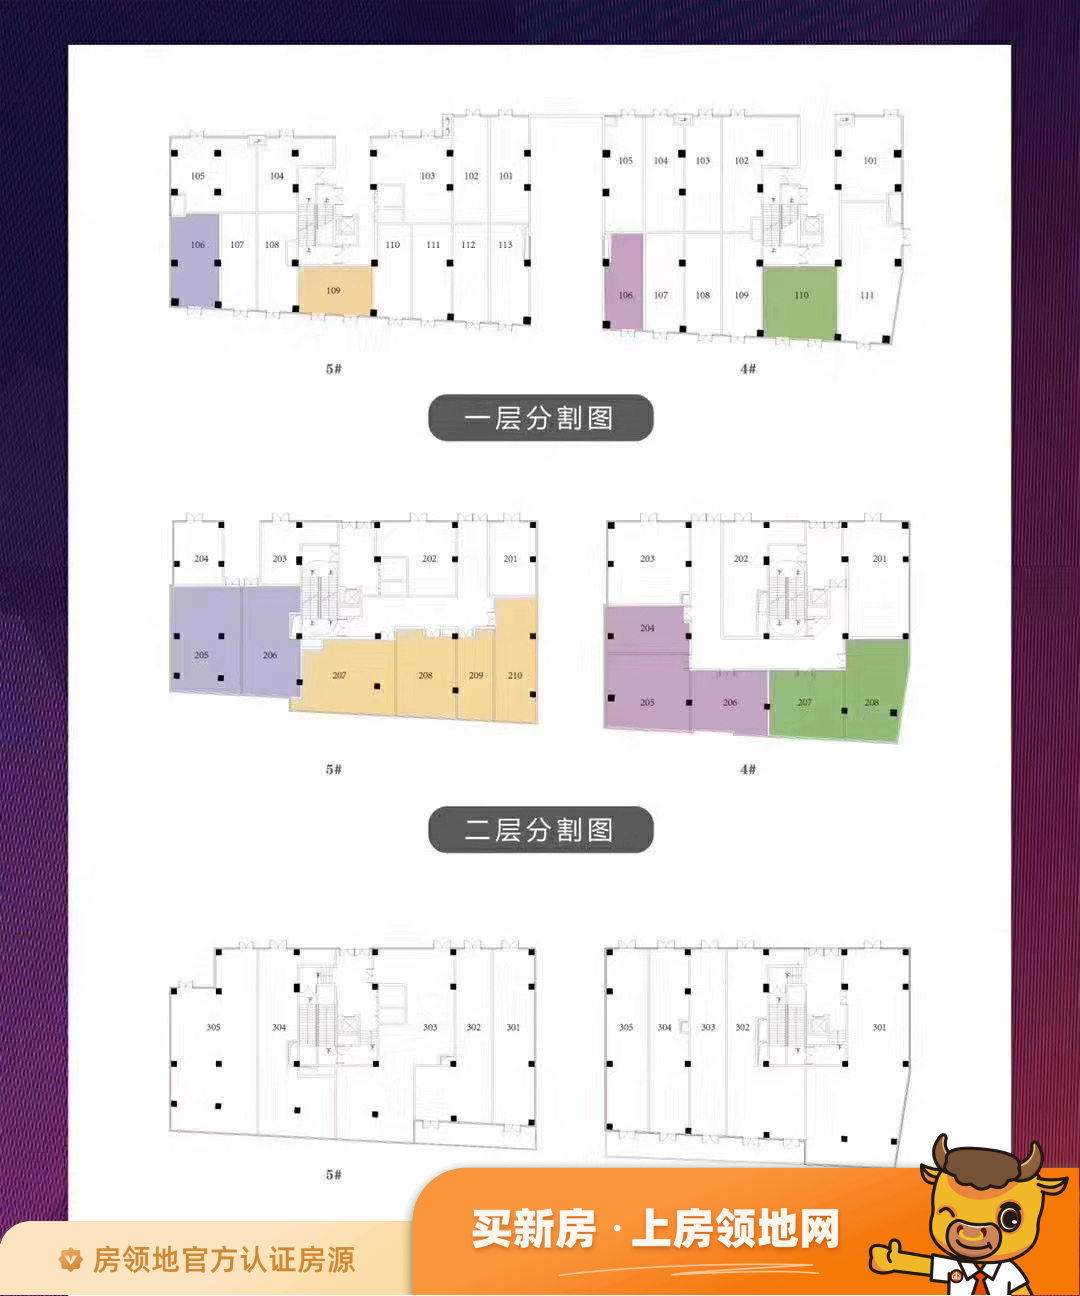 耀江商业广场商铺规划图2